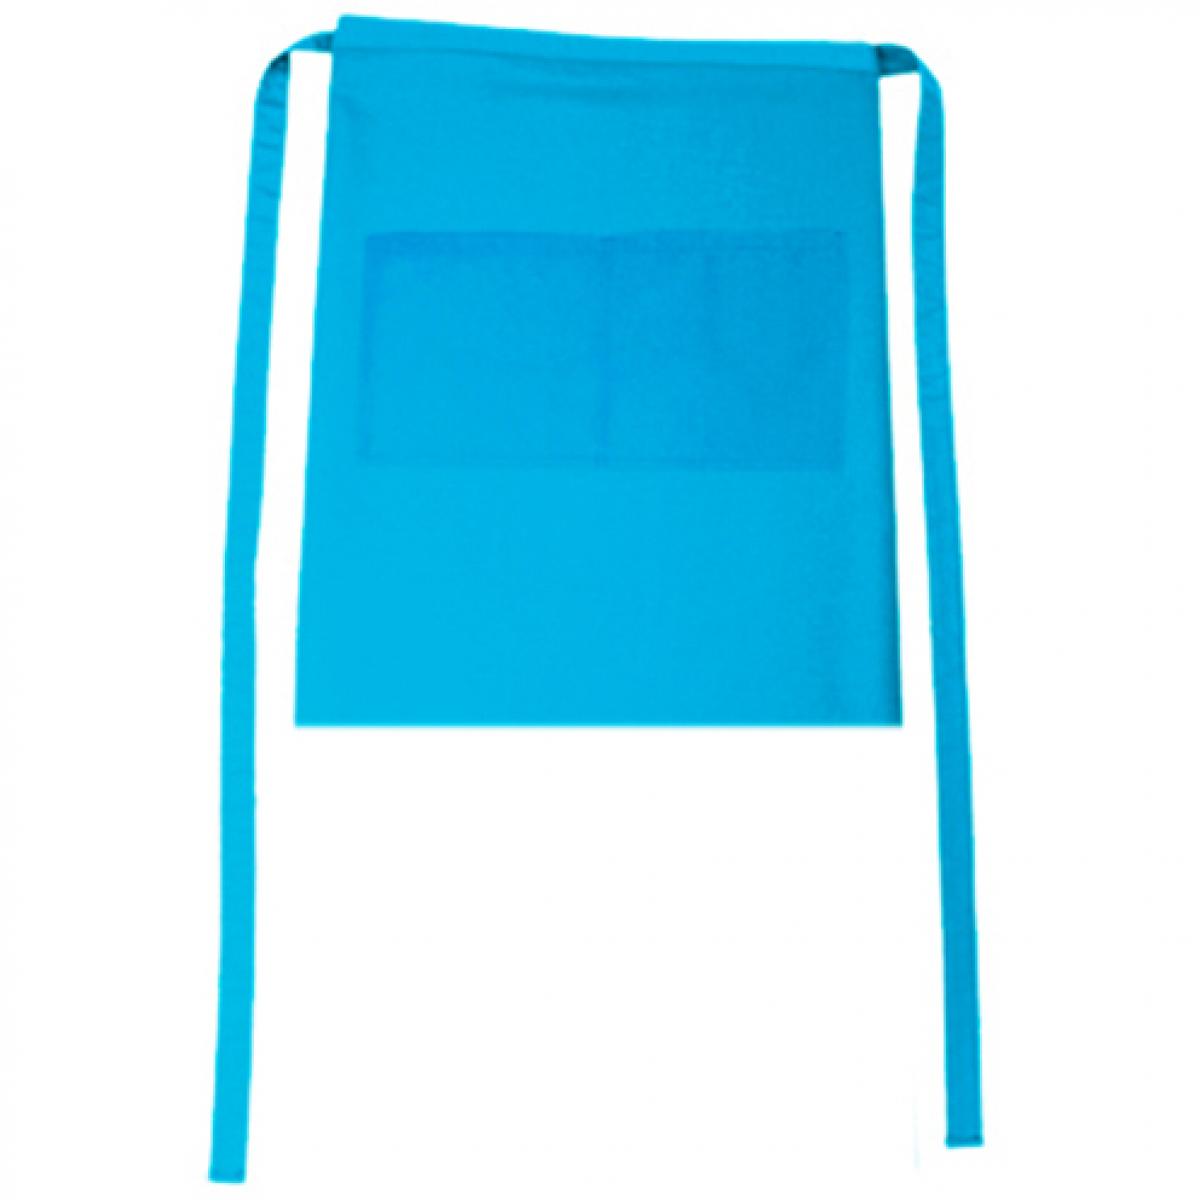 Hersteller: CG Workwear Herstellernummer: 01262-01 Artikelbezeichnung: Bistroschürze Roma Bag 50 x 78 cm Farbe: Turquoise